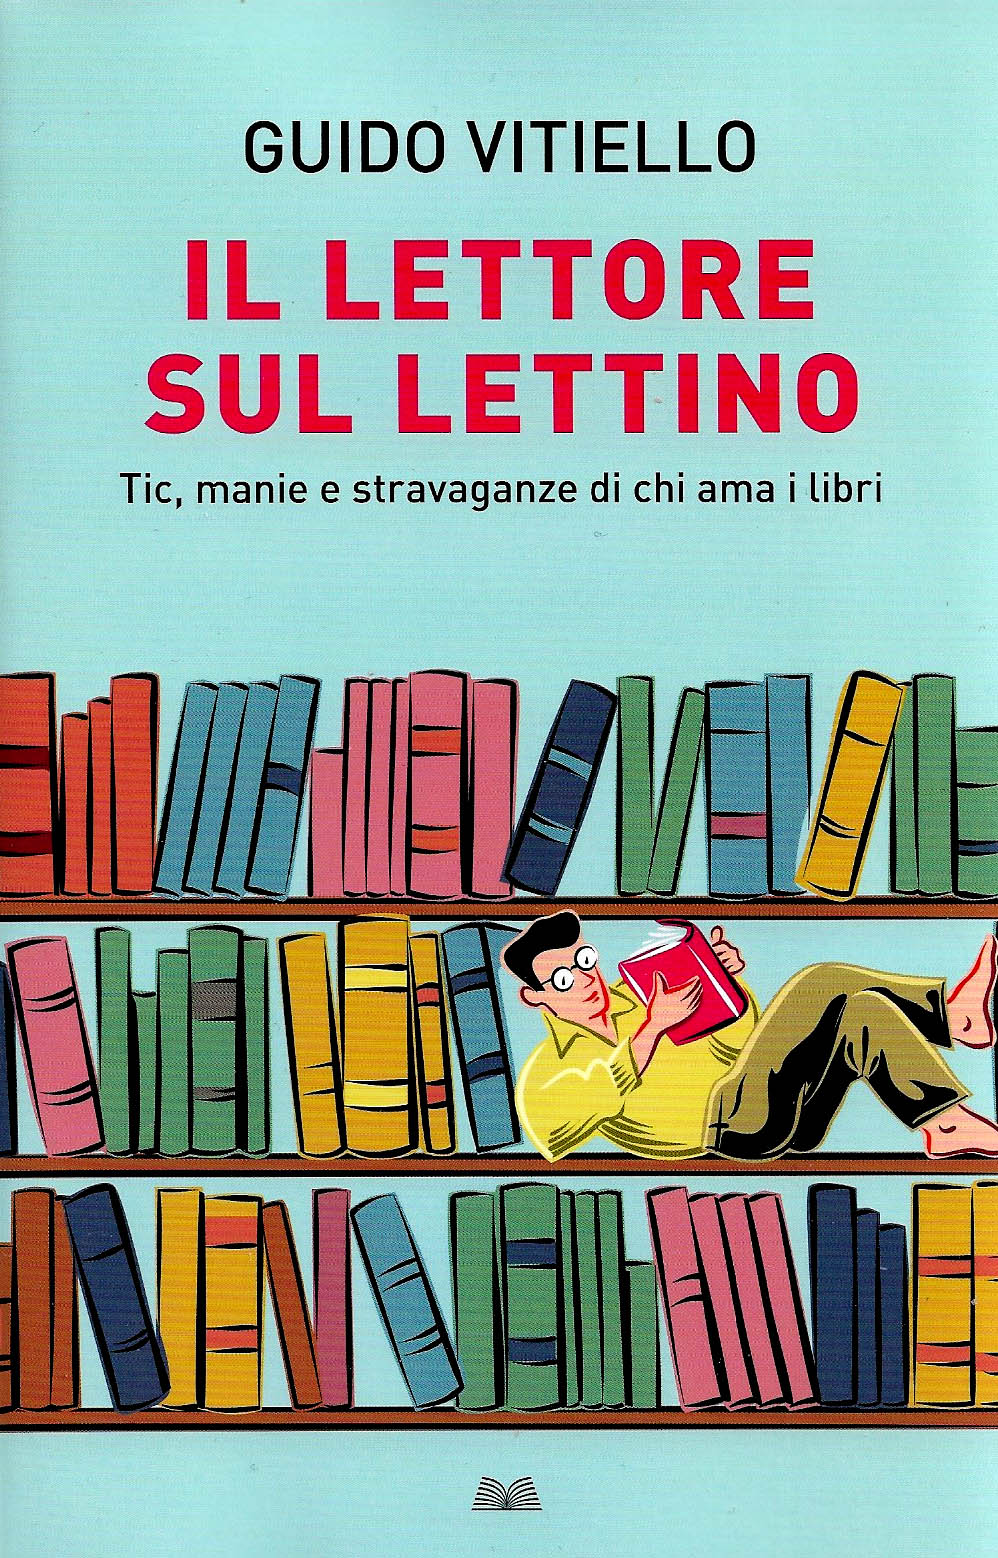 “Il lettore sul lettino” – Guido Vitiello